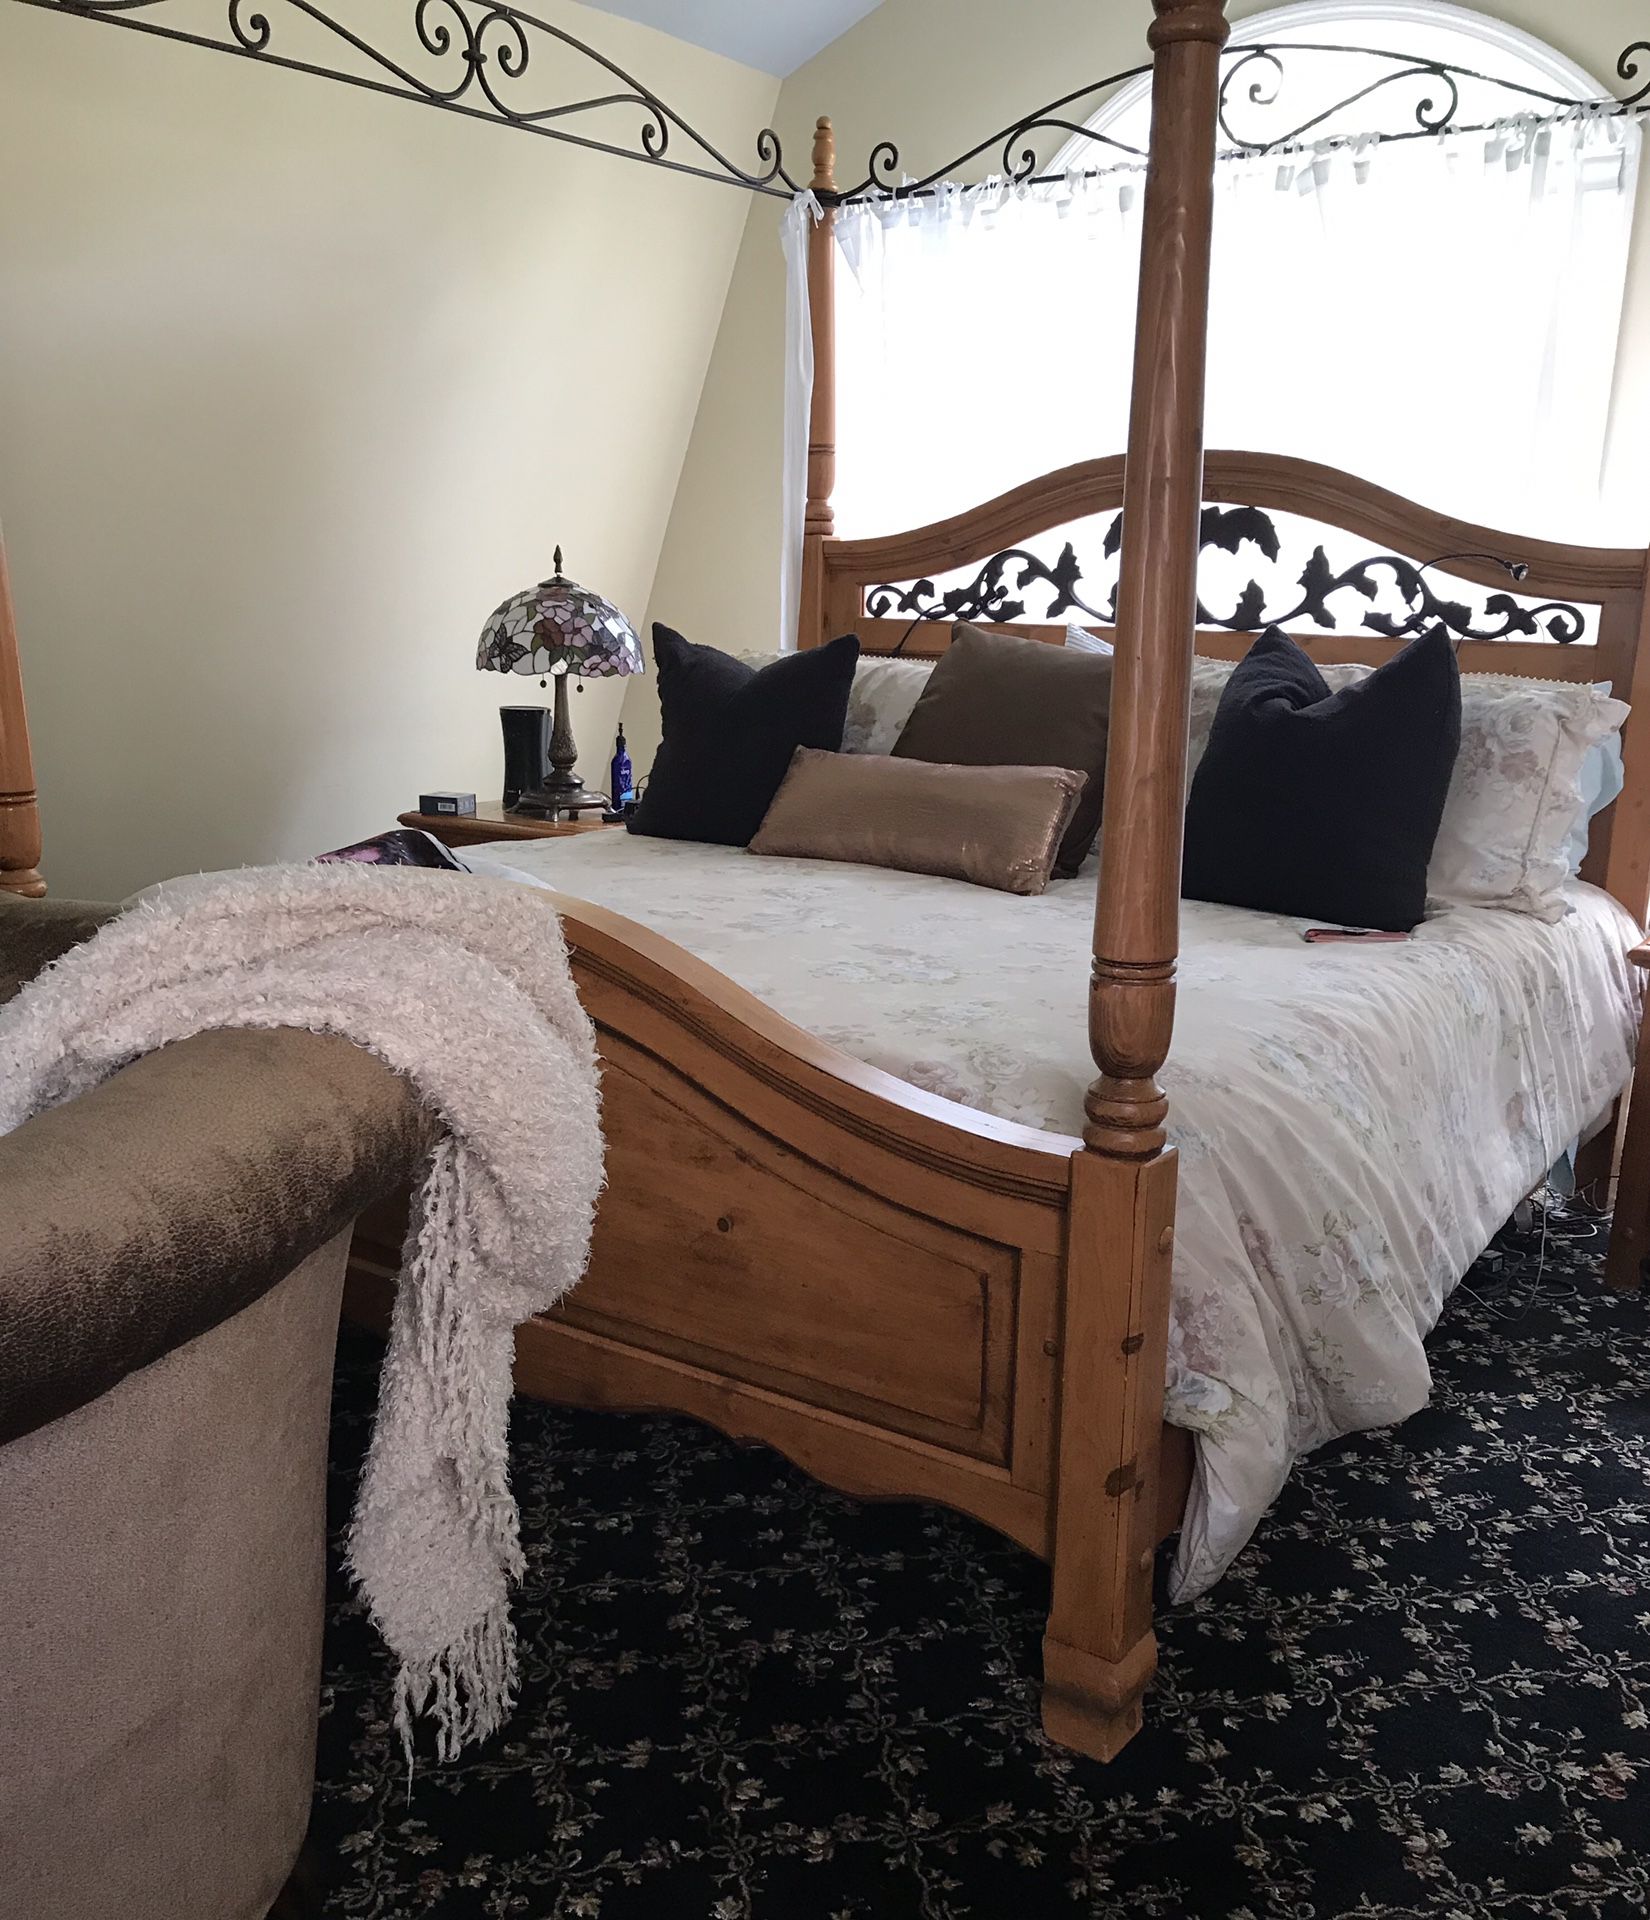 King Bedroom Furniture